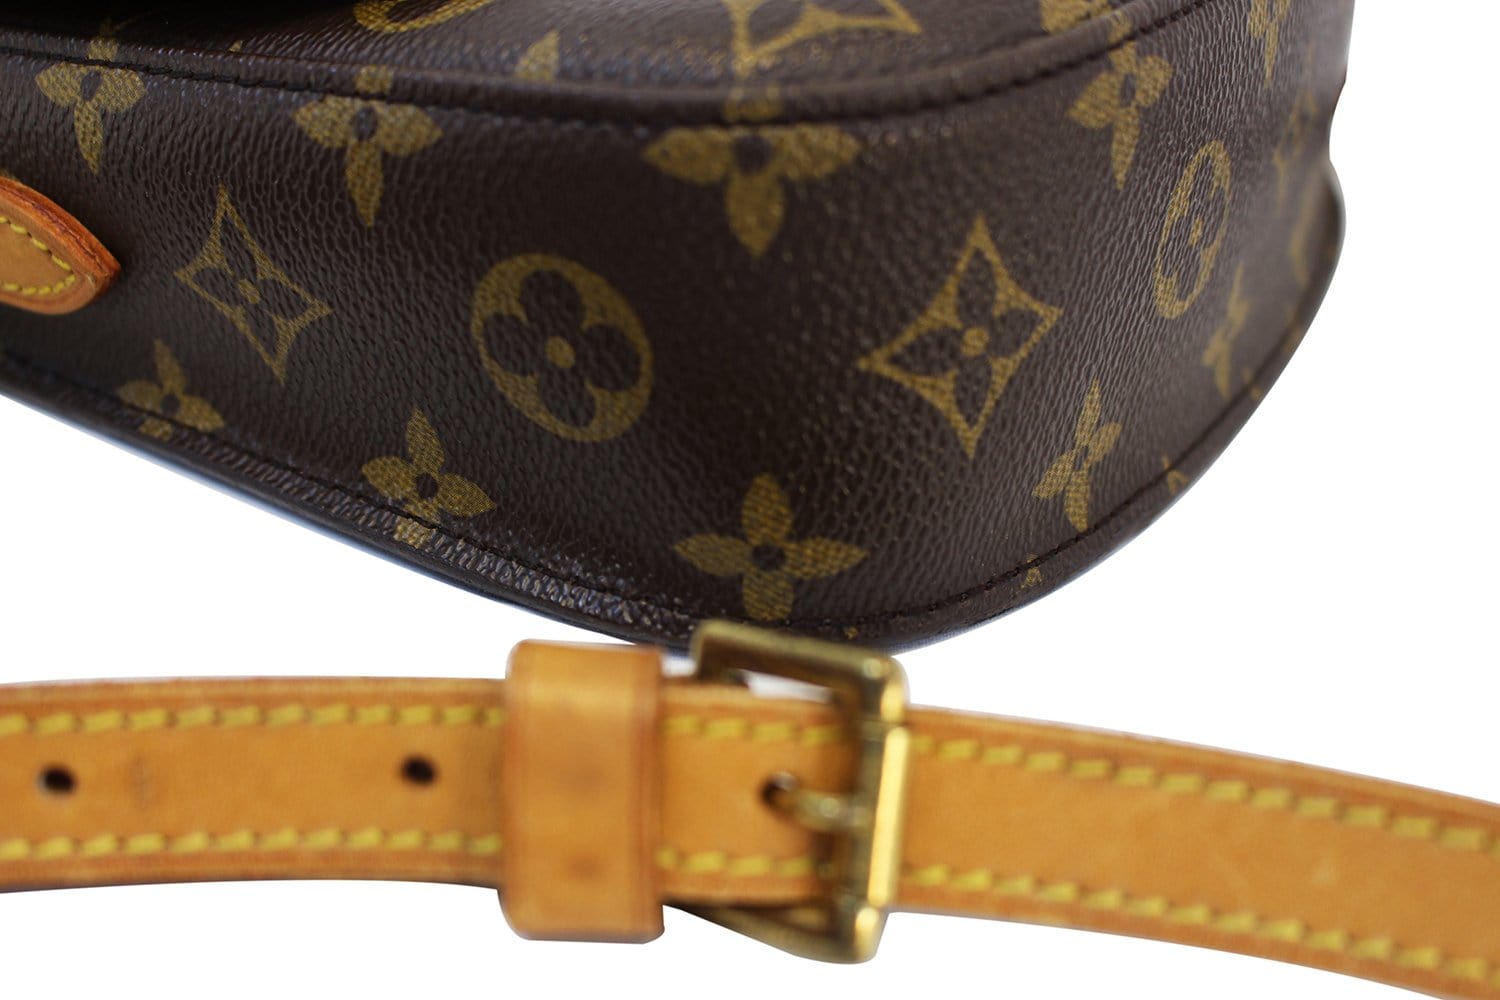 VINTAGE Louis Vuitton St. Cloud MM Size Lv Bags Authentic 